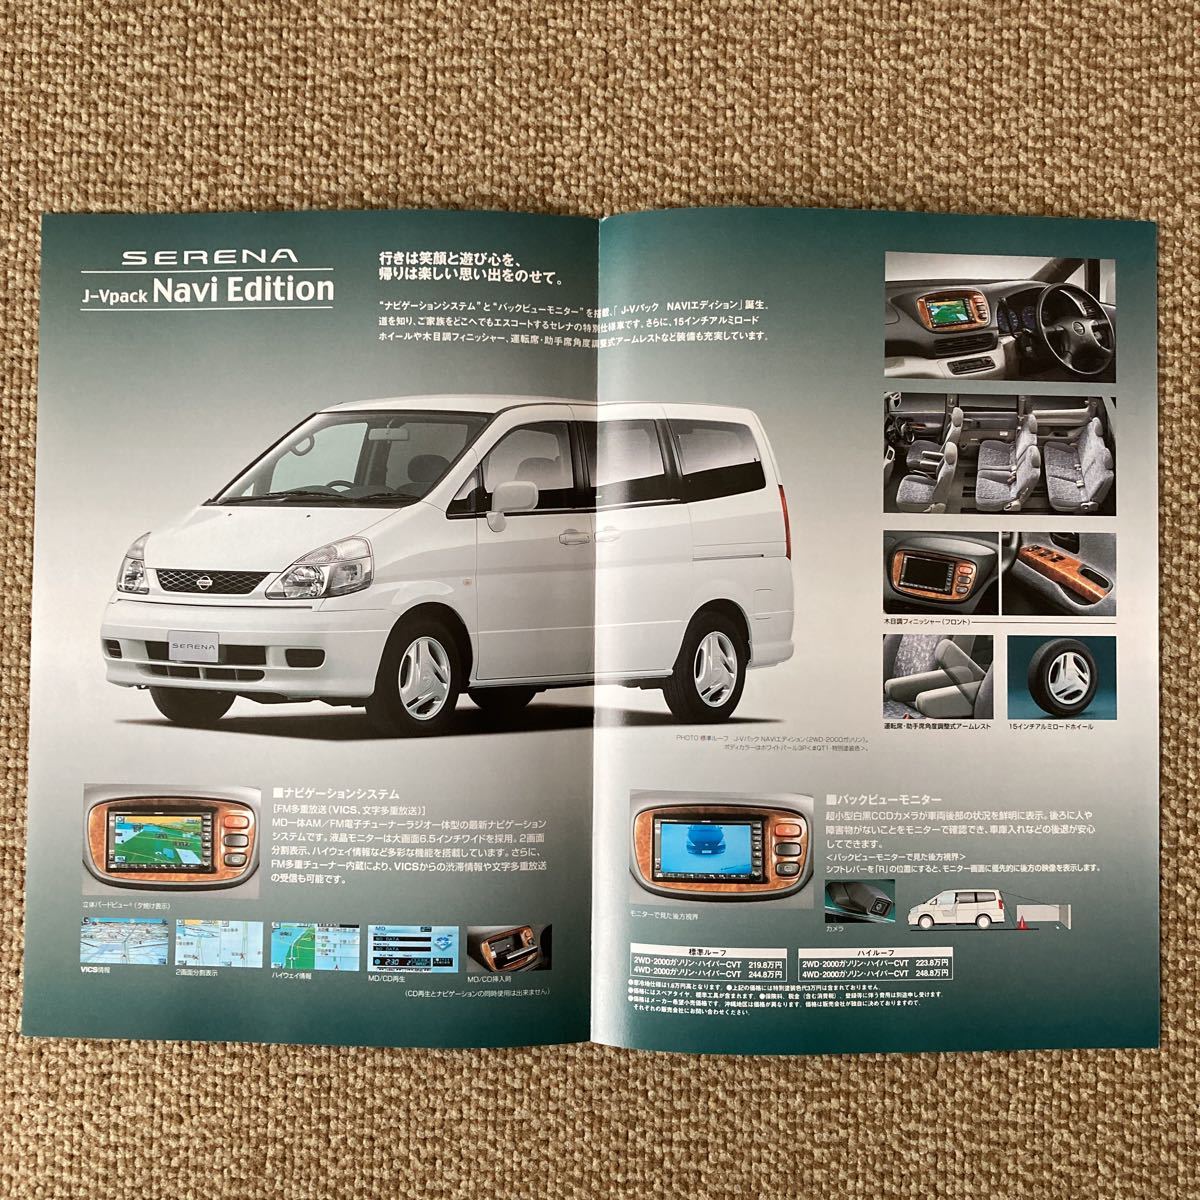  Nissan Serena каталог 2001 год 5 месяц 